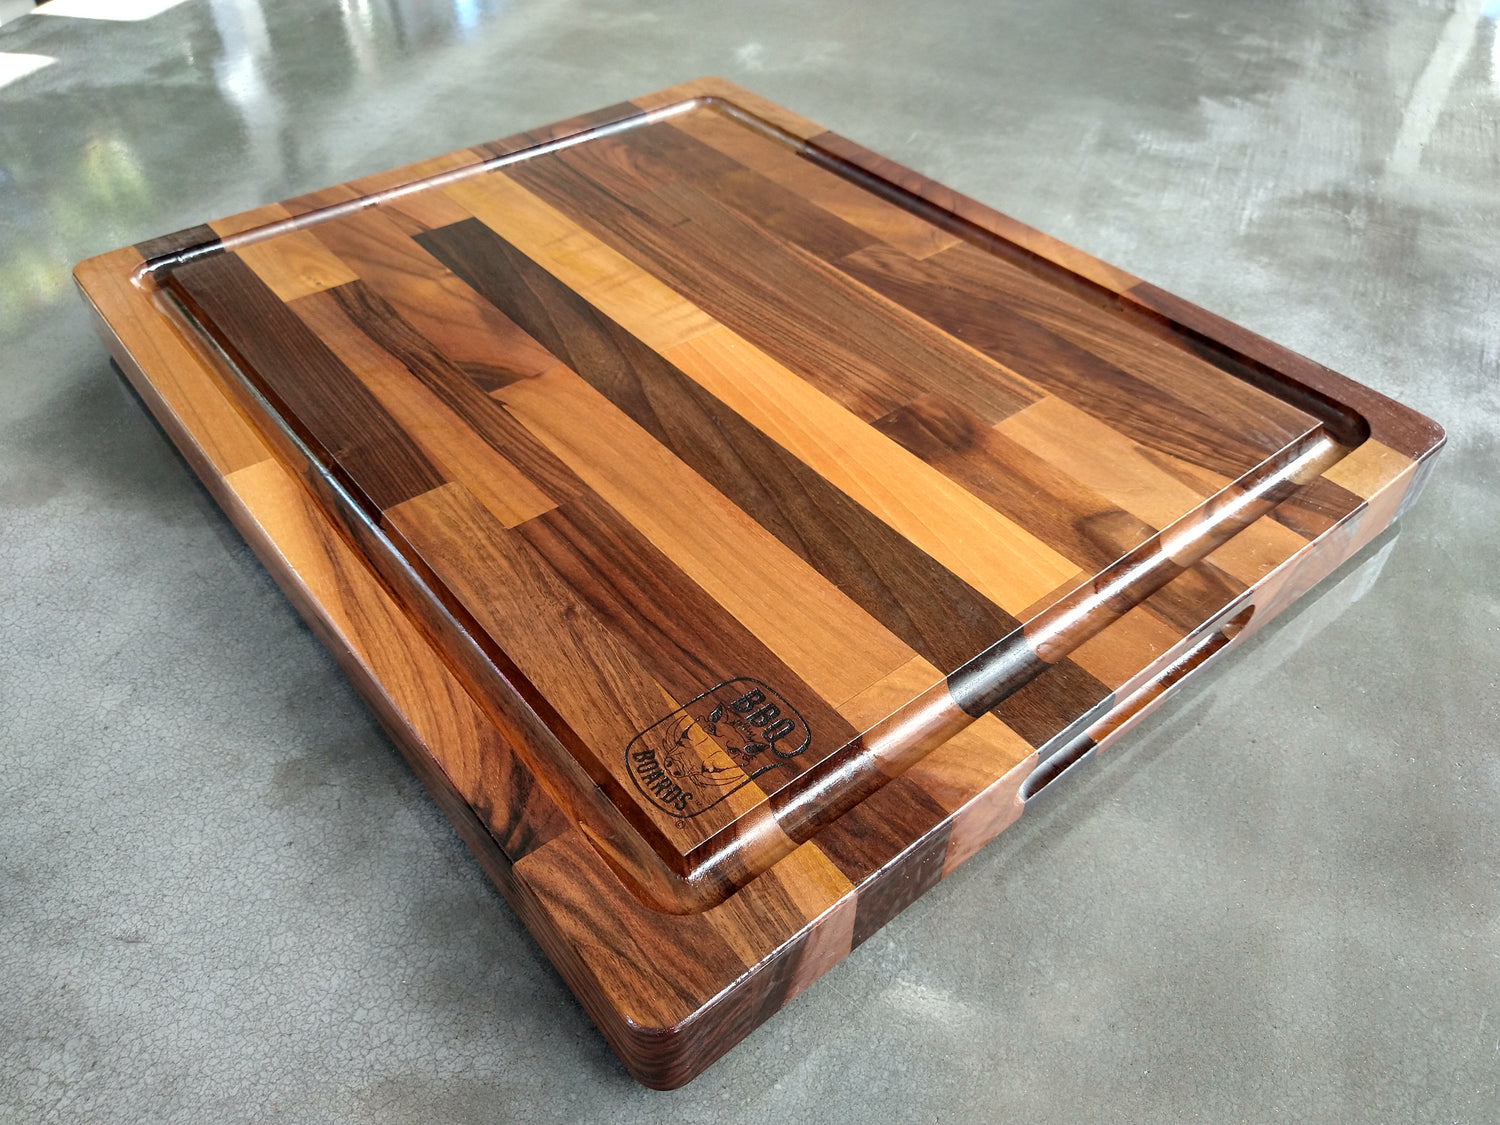 ZWILLING BBQ+ Cutting Board w/ Tray – Atlanta Grill Company